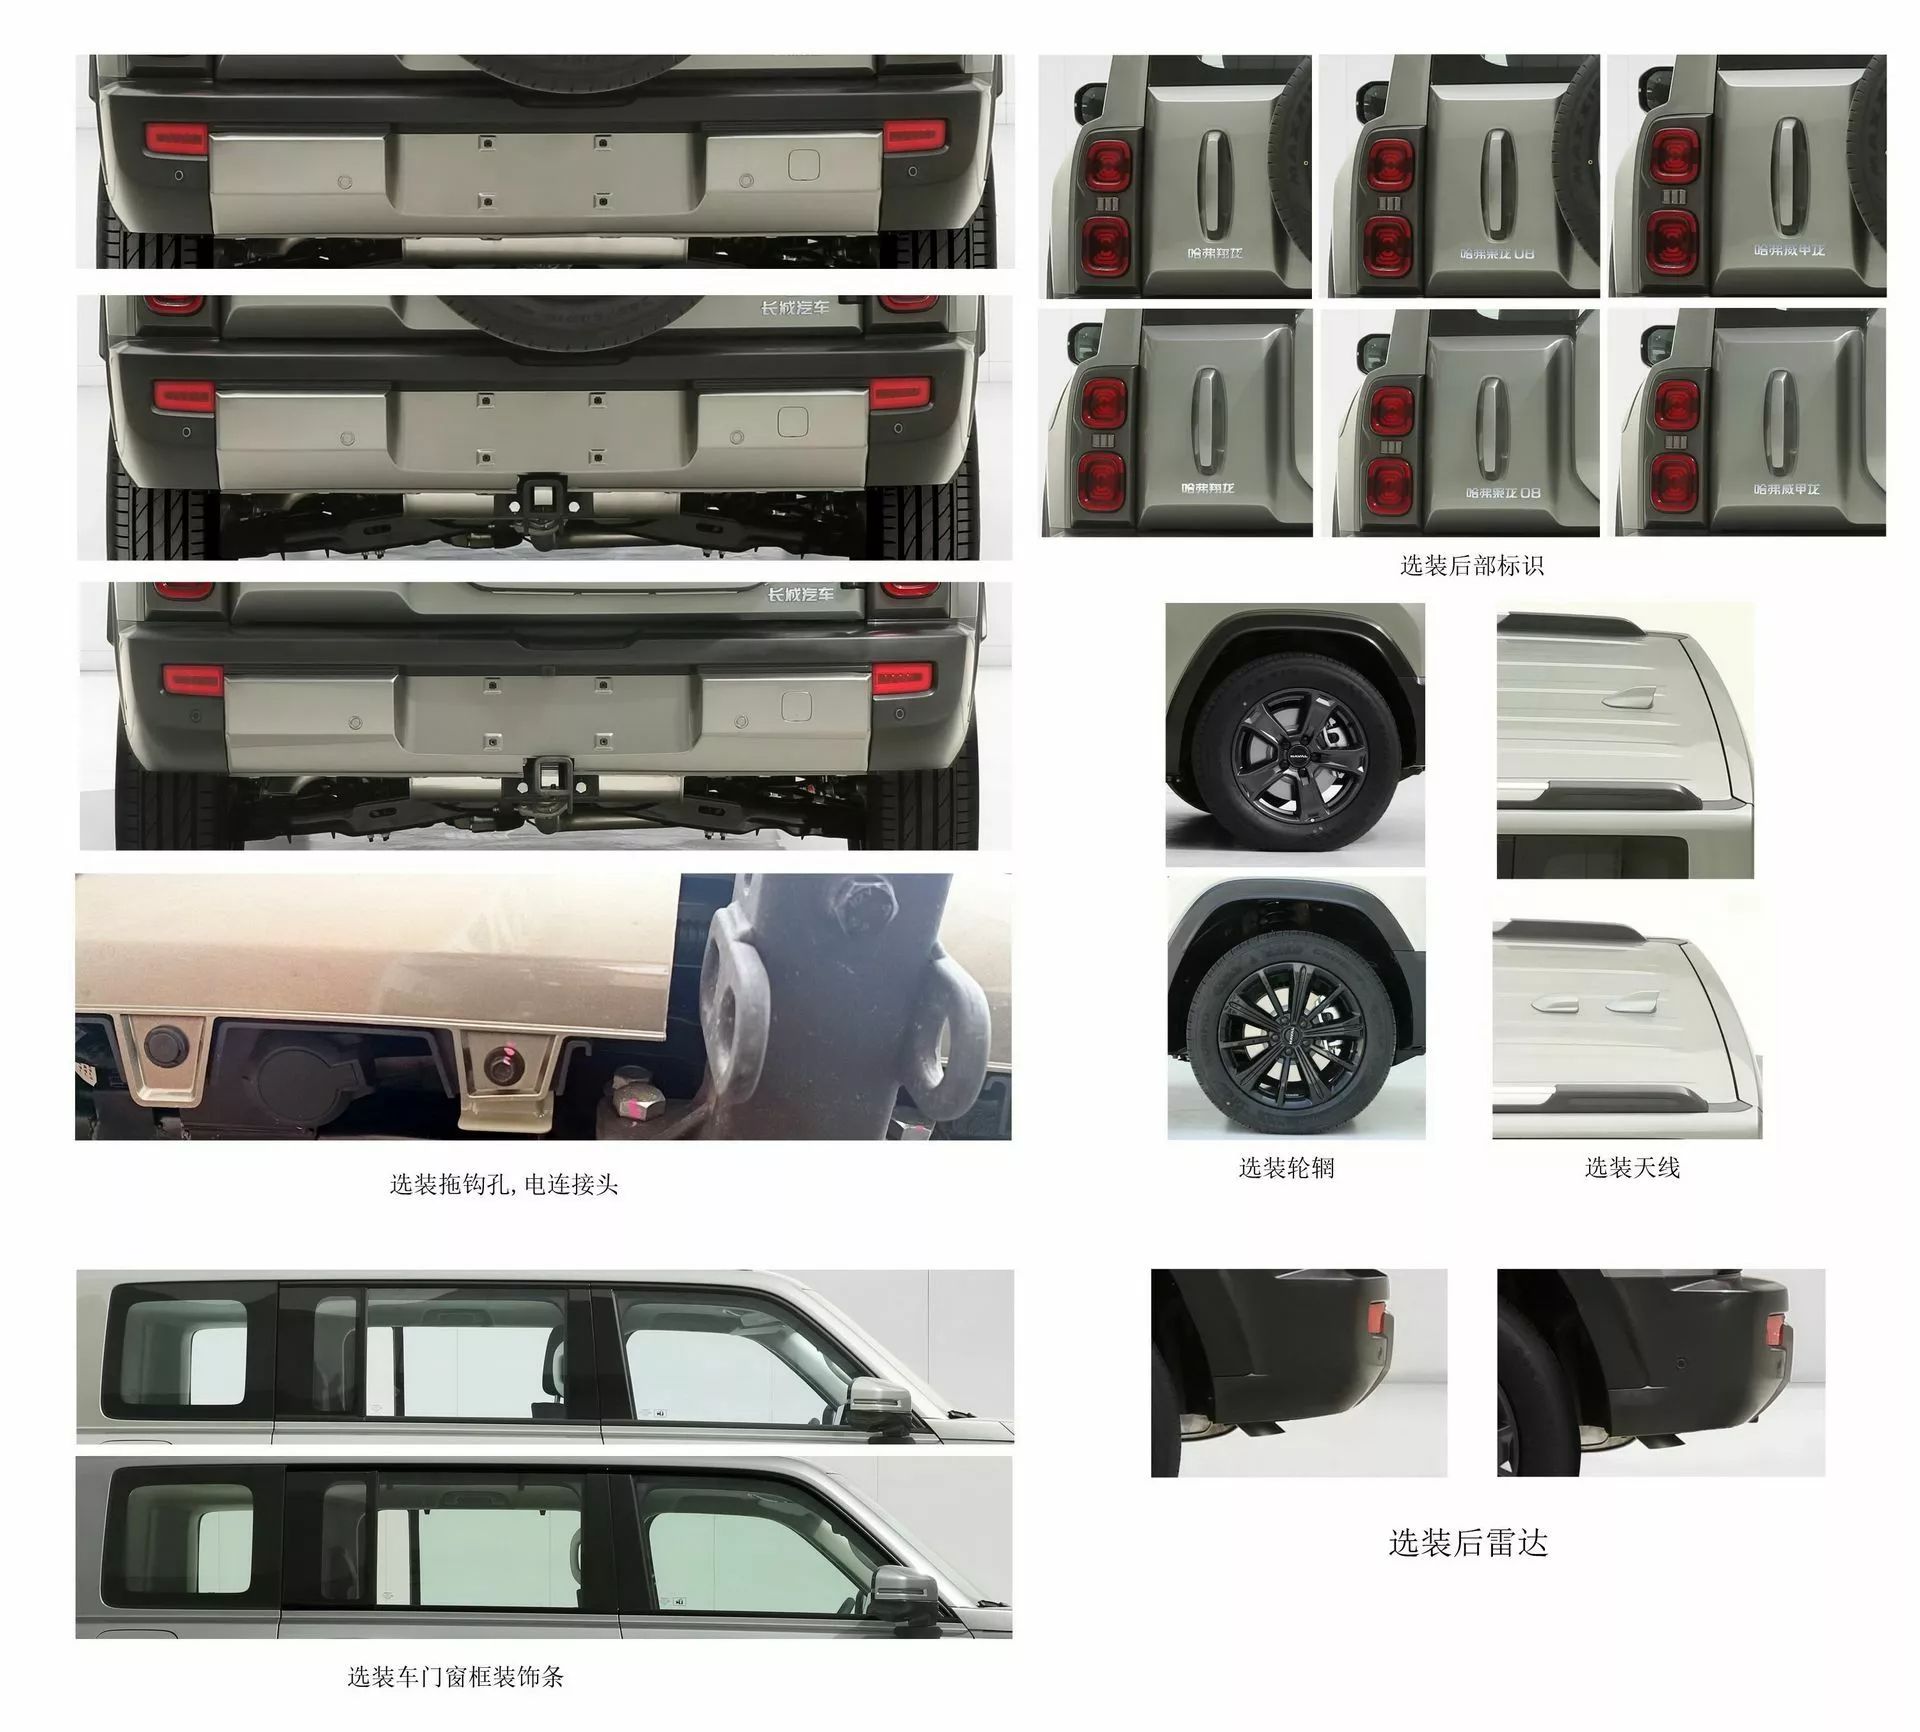 هافال شيانغ لونغ هي SUV صينية جديدة كلياً بتصميم عضلي ومحركات هايبرد 4